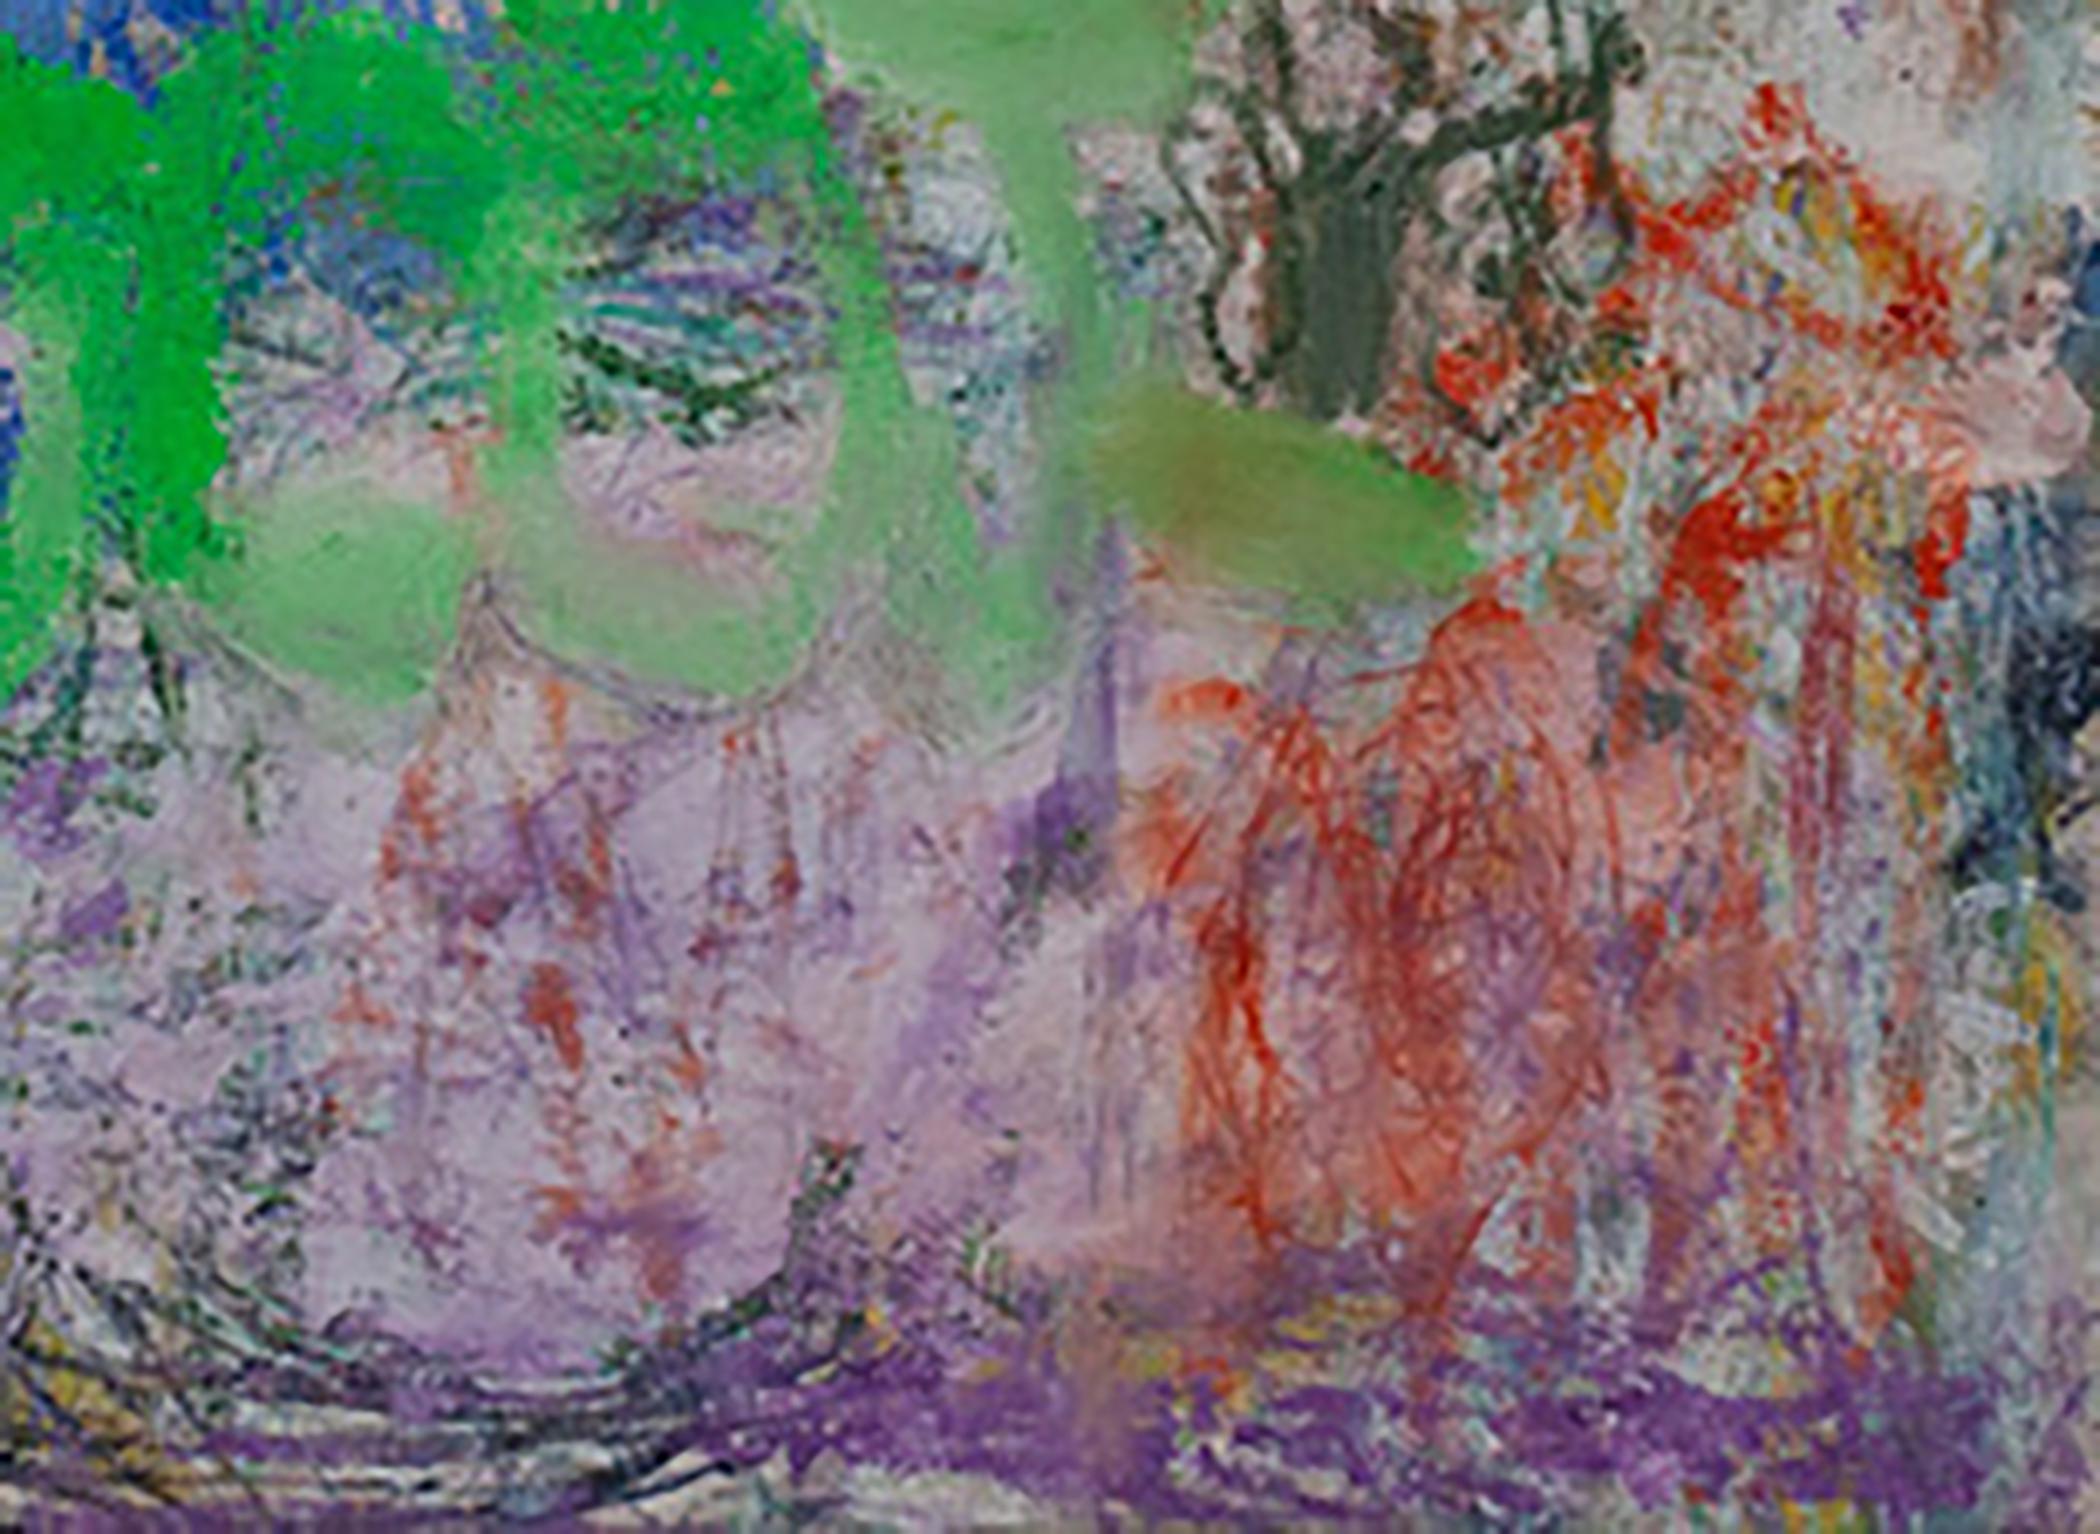 Secret Language, Blau, Grün, Weiß, Abstrakt, gestische Abstraktion, Graffiti (Abstrakter Expressionismus), Painting, von Margaret Fitzgerald